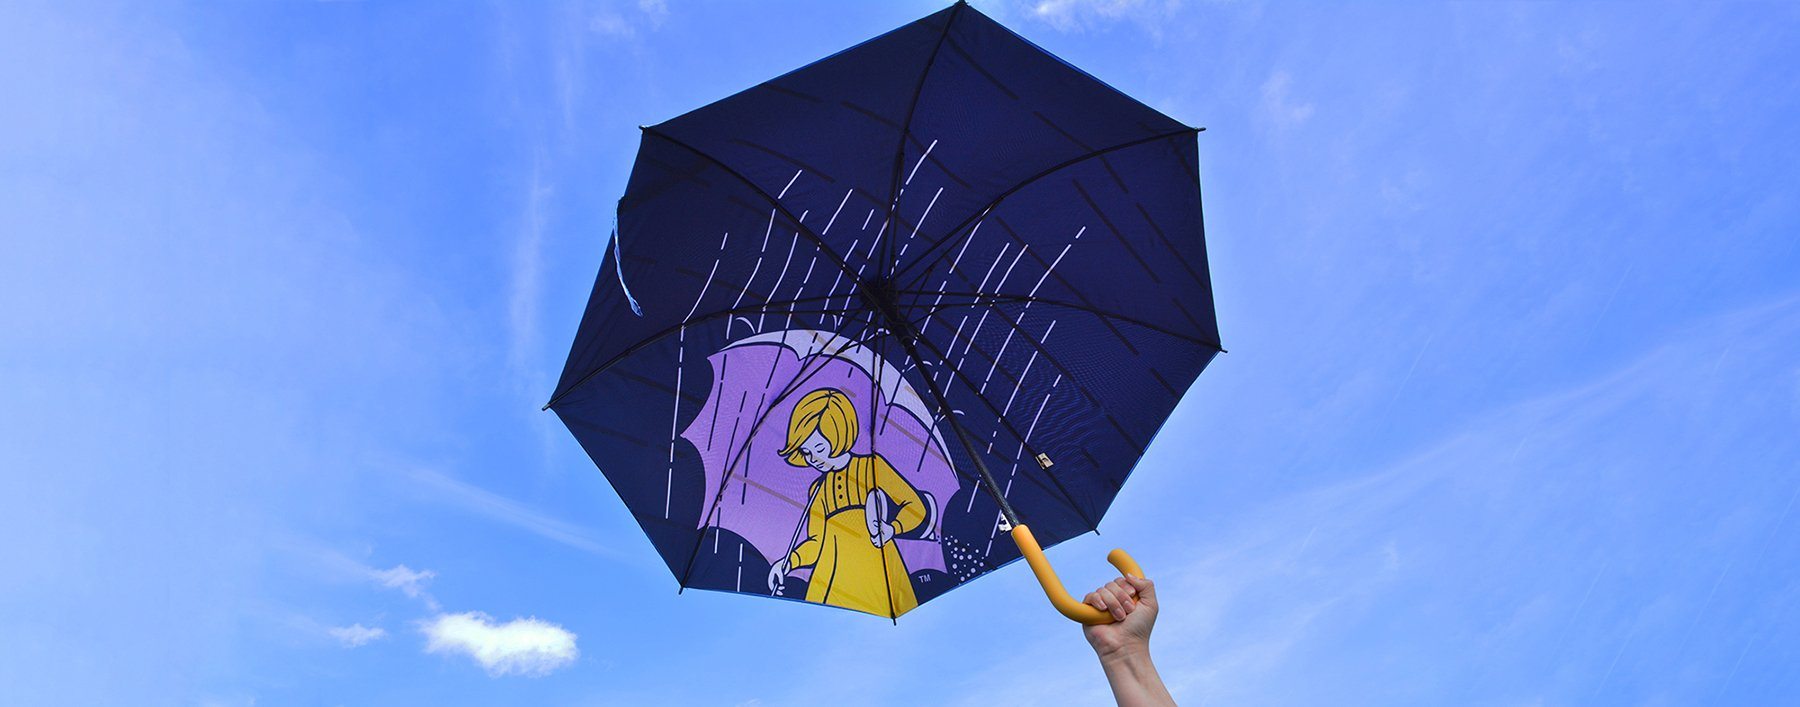 Morton Umbrella